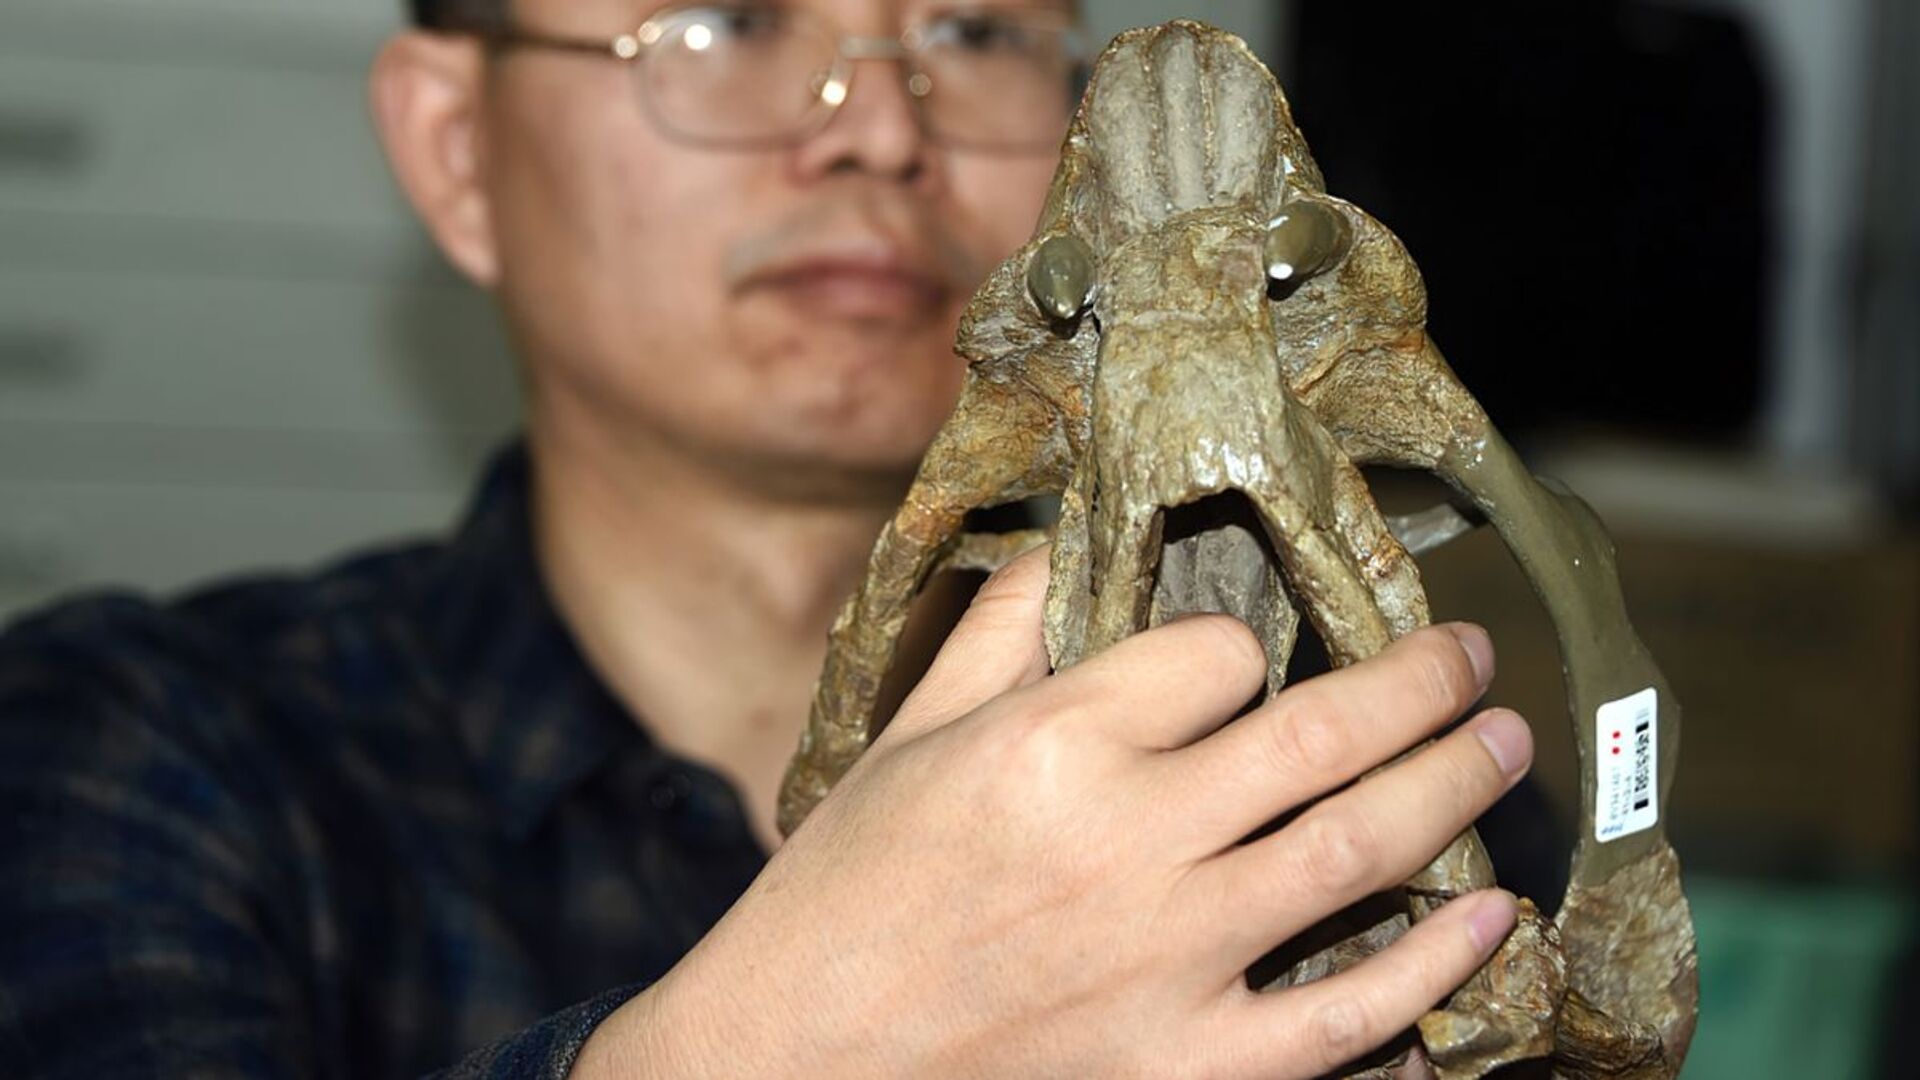 Descobrem na China nova espécie de réptil com 2 presas que viveu há 250 milhões de anos (FOTOS) - Sputnik Brasil, 1920, 27.02.2021